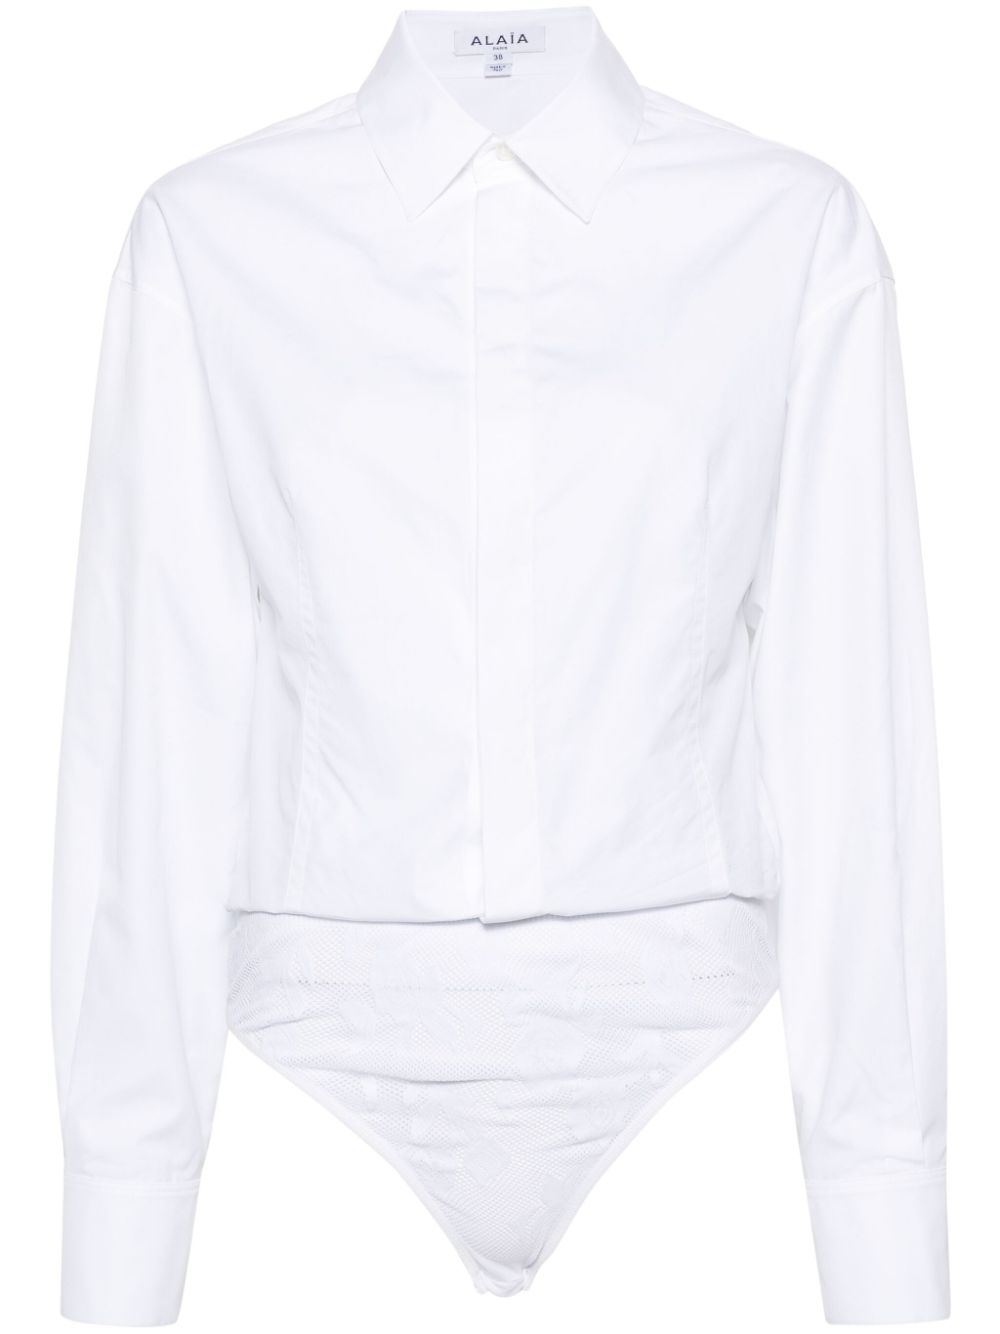 ALAIA White Cotton Shirt Bodysuit for Women